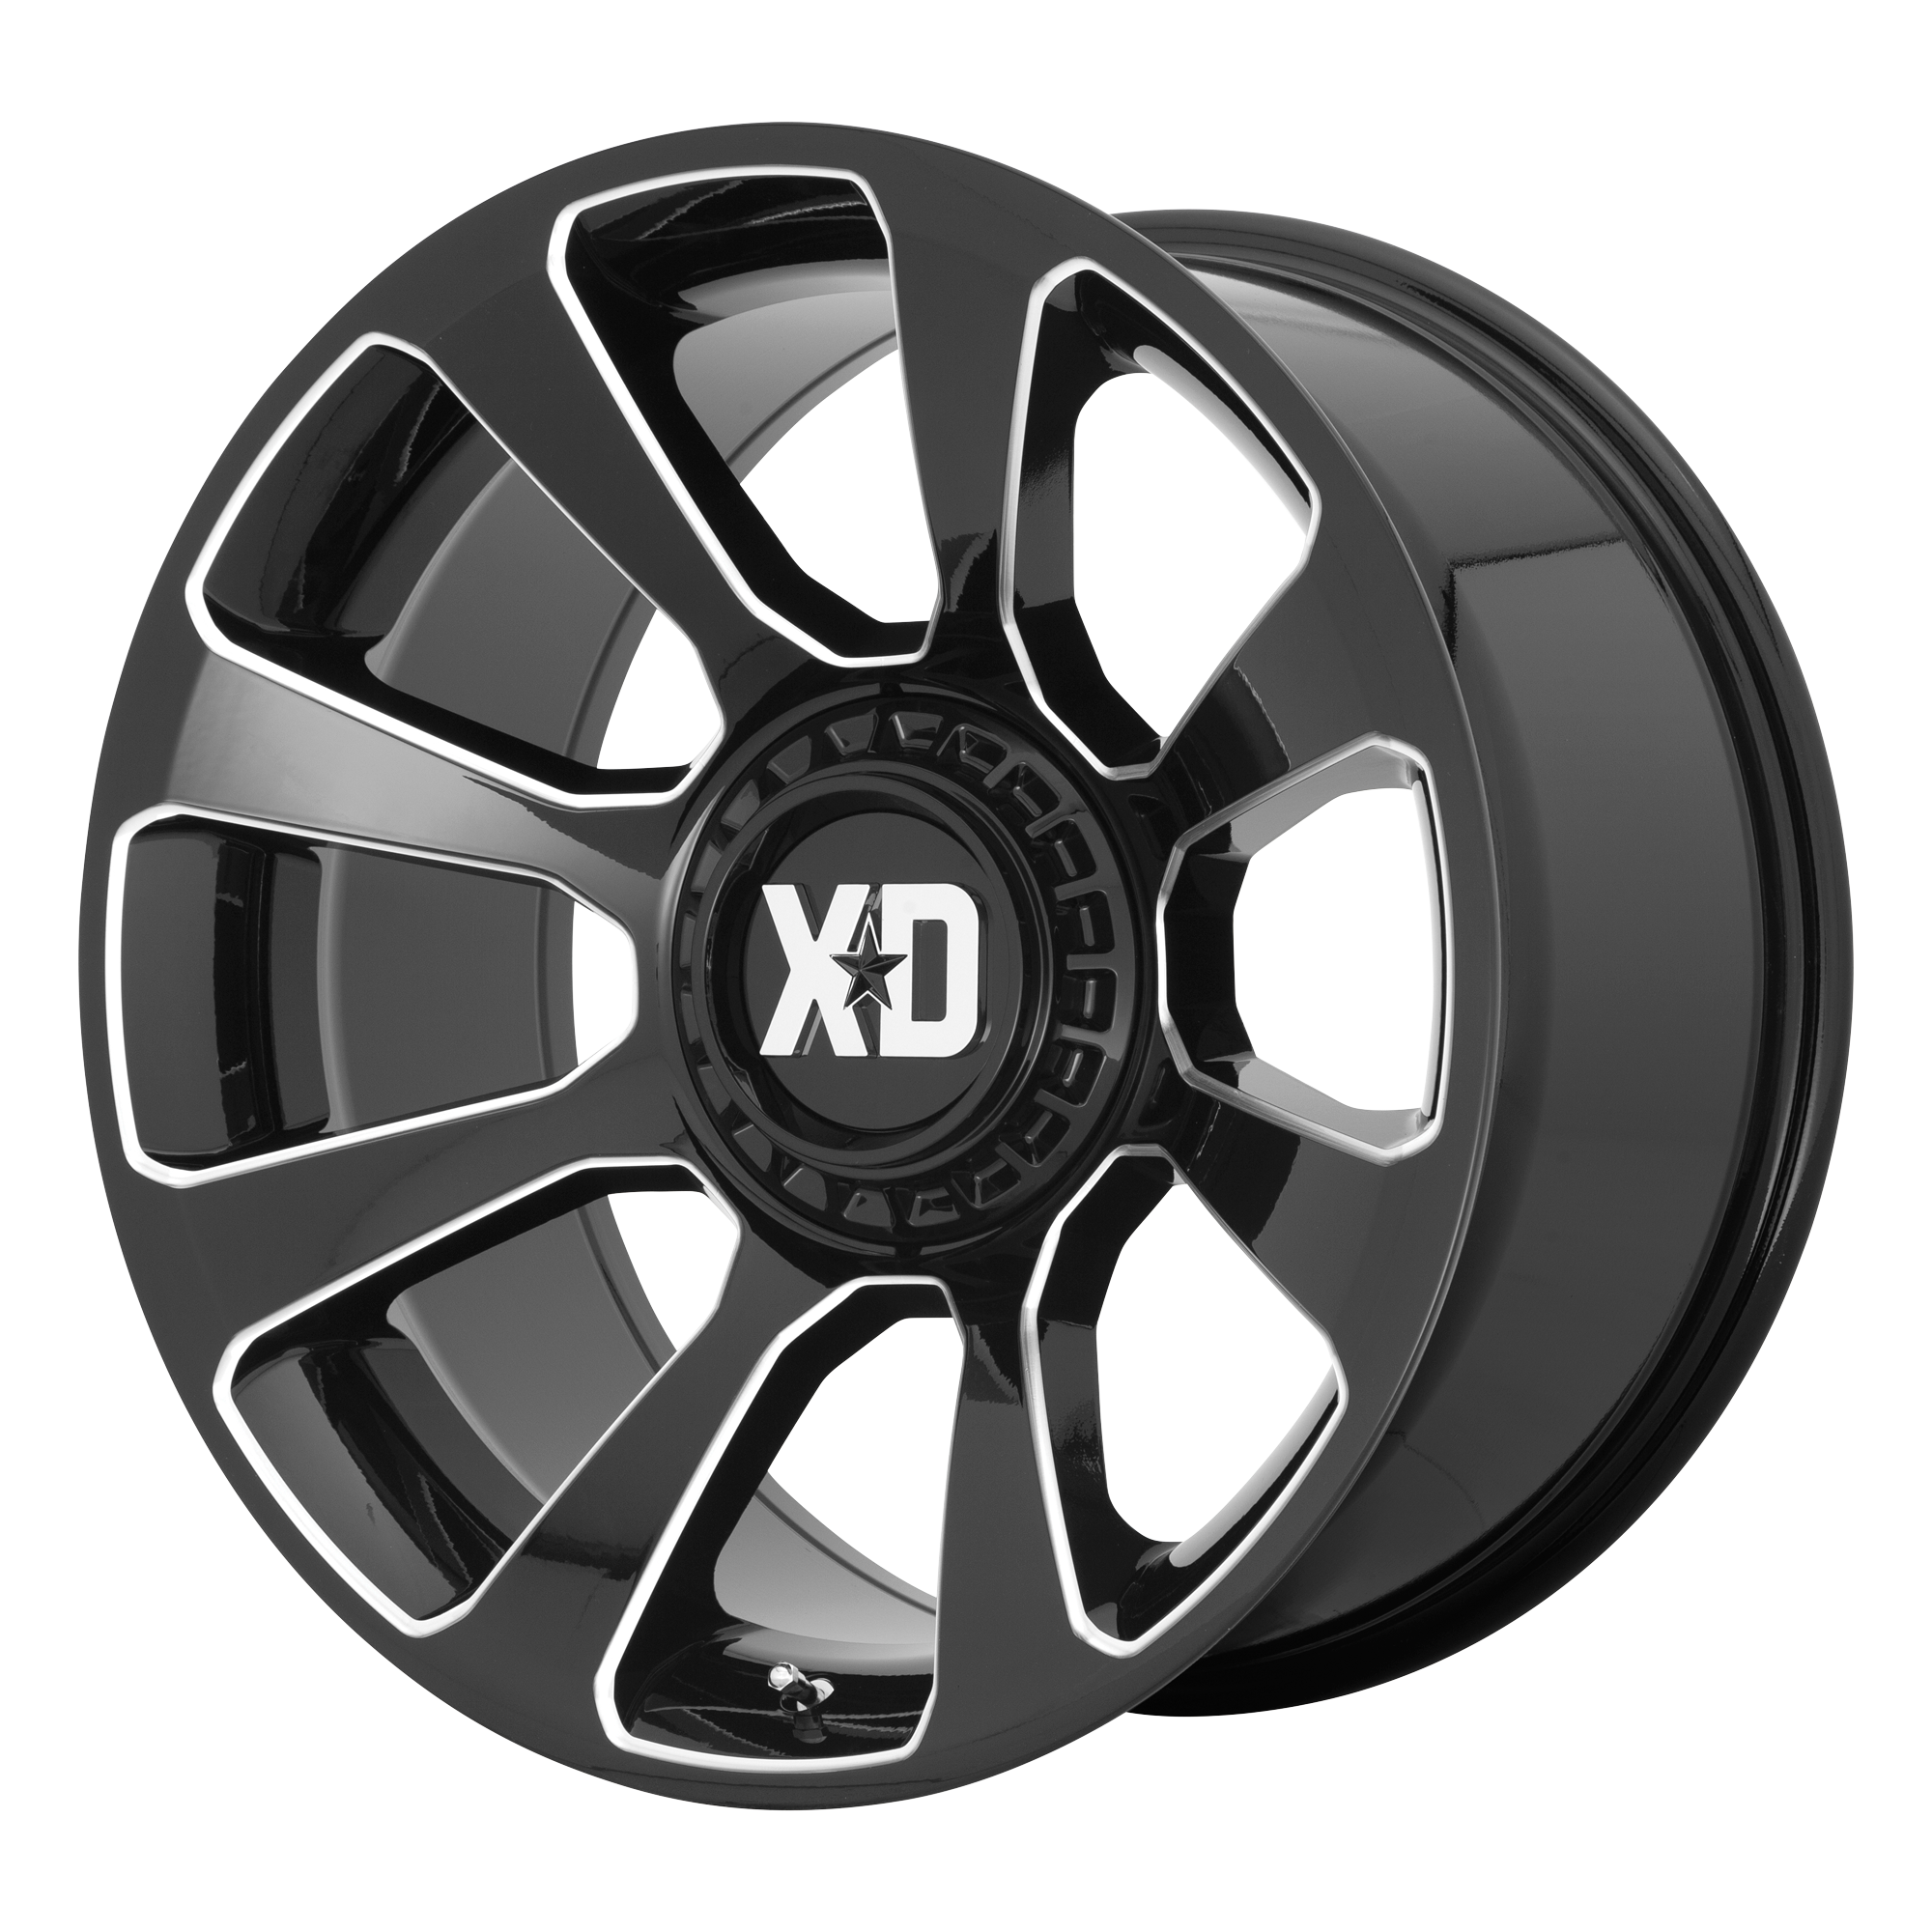 XD 20"x10" Non-Chrome Gloss Black Milled Custom Wheel ARSWCWXD85421067318N